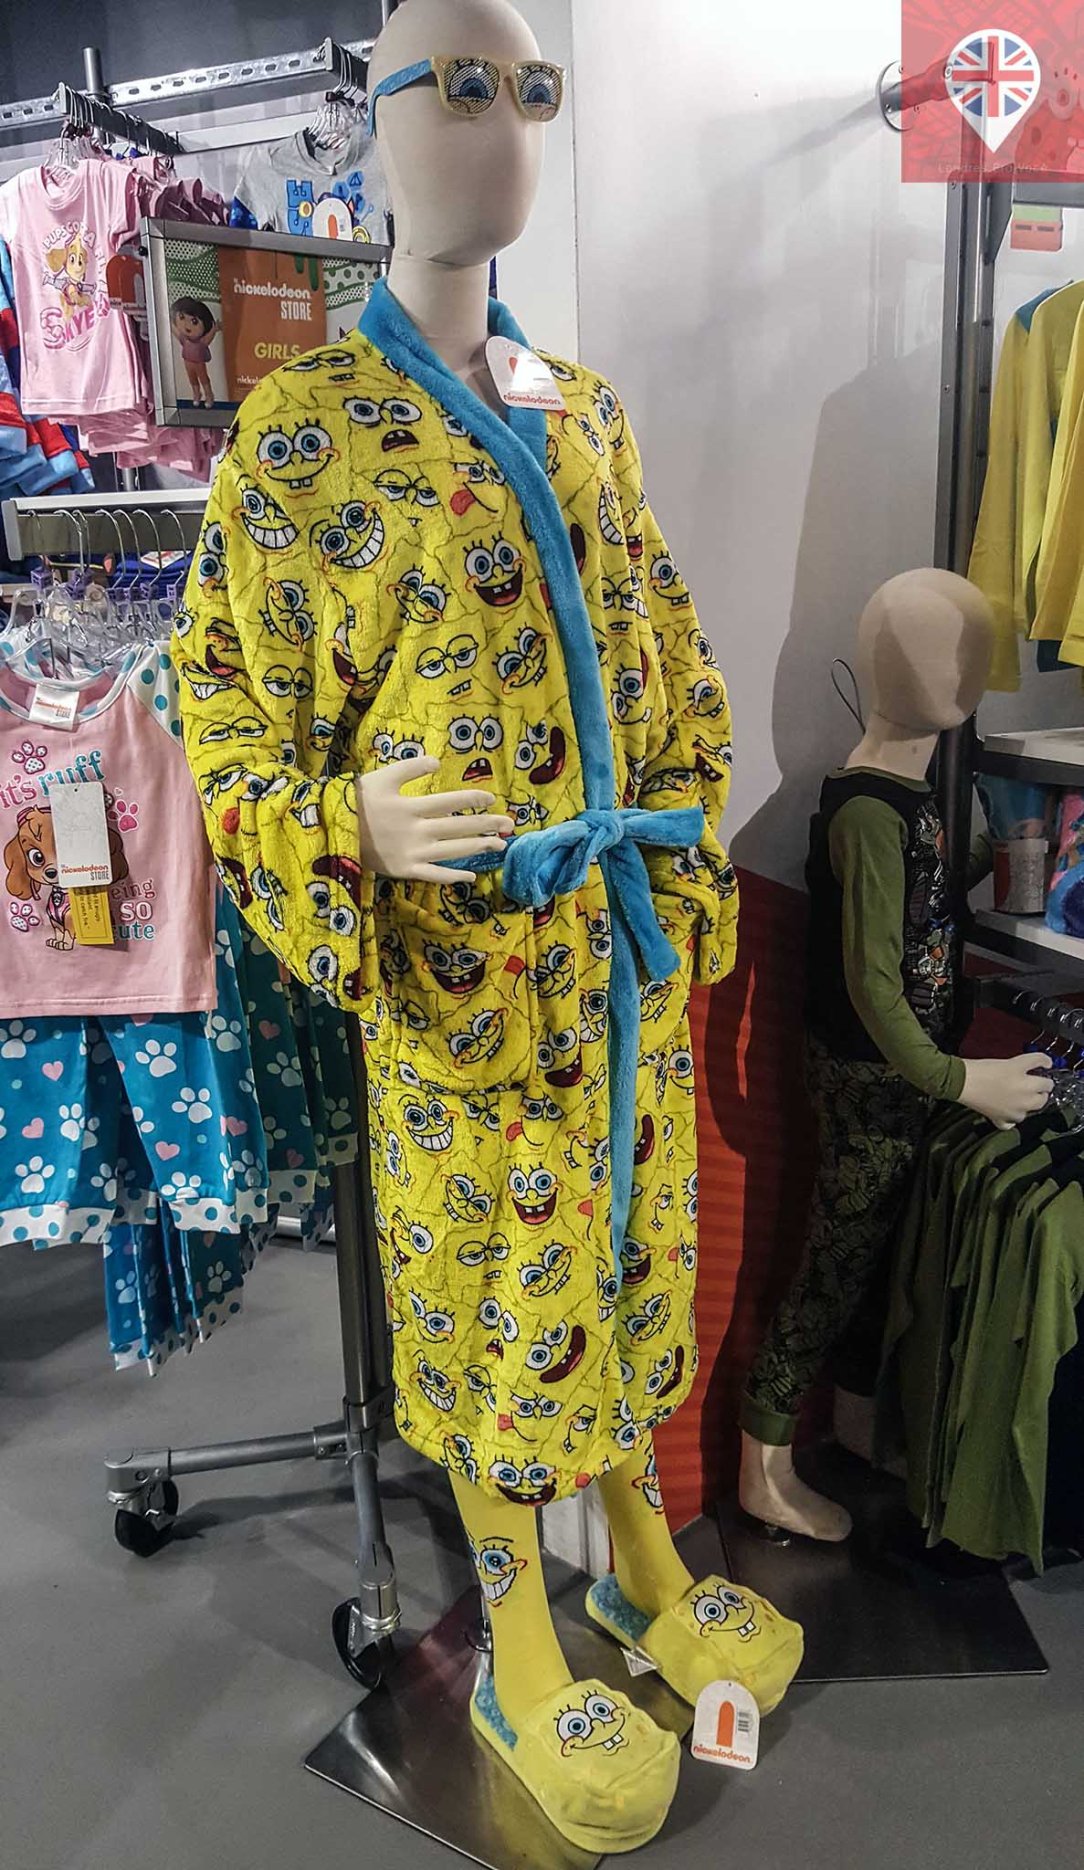 Nickelodeon store sponge bob robe